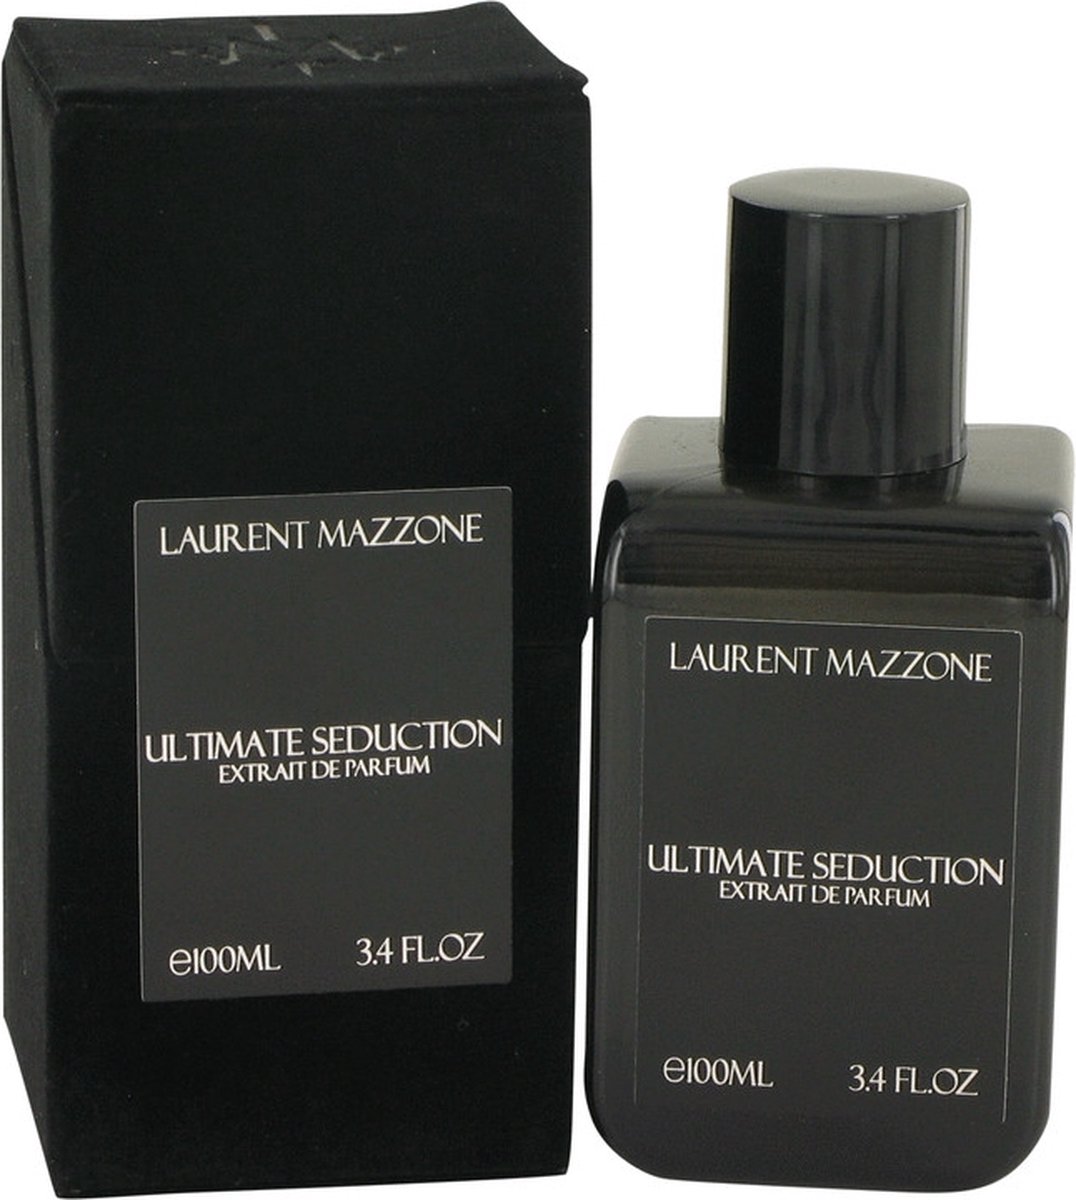 Ultimate Seduction by Laurent Mazzone 100 ml - Extrait De Parfum Spray